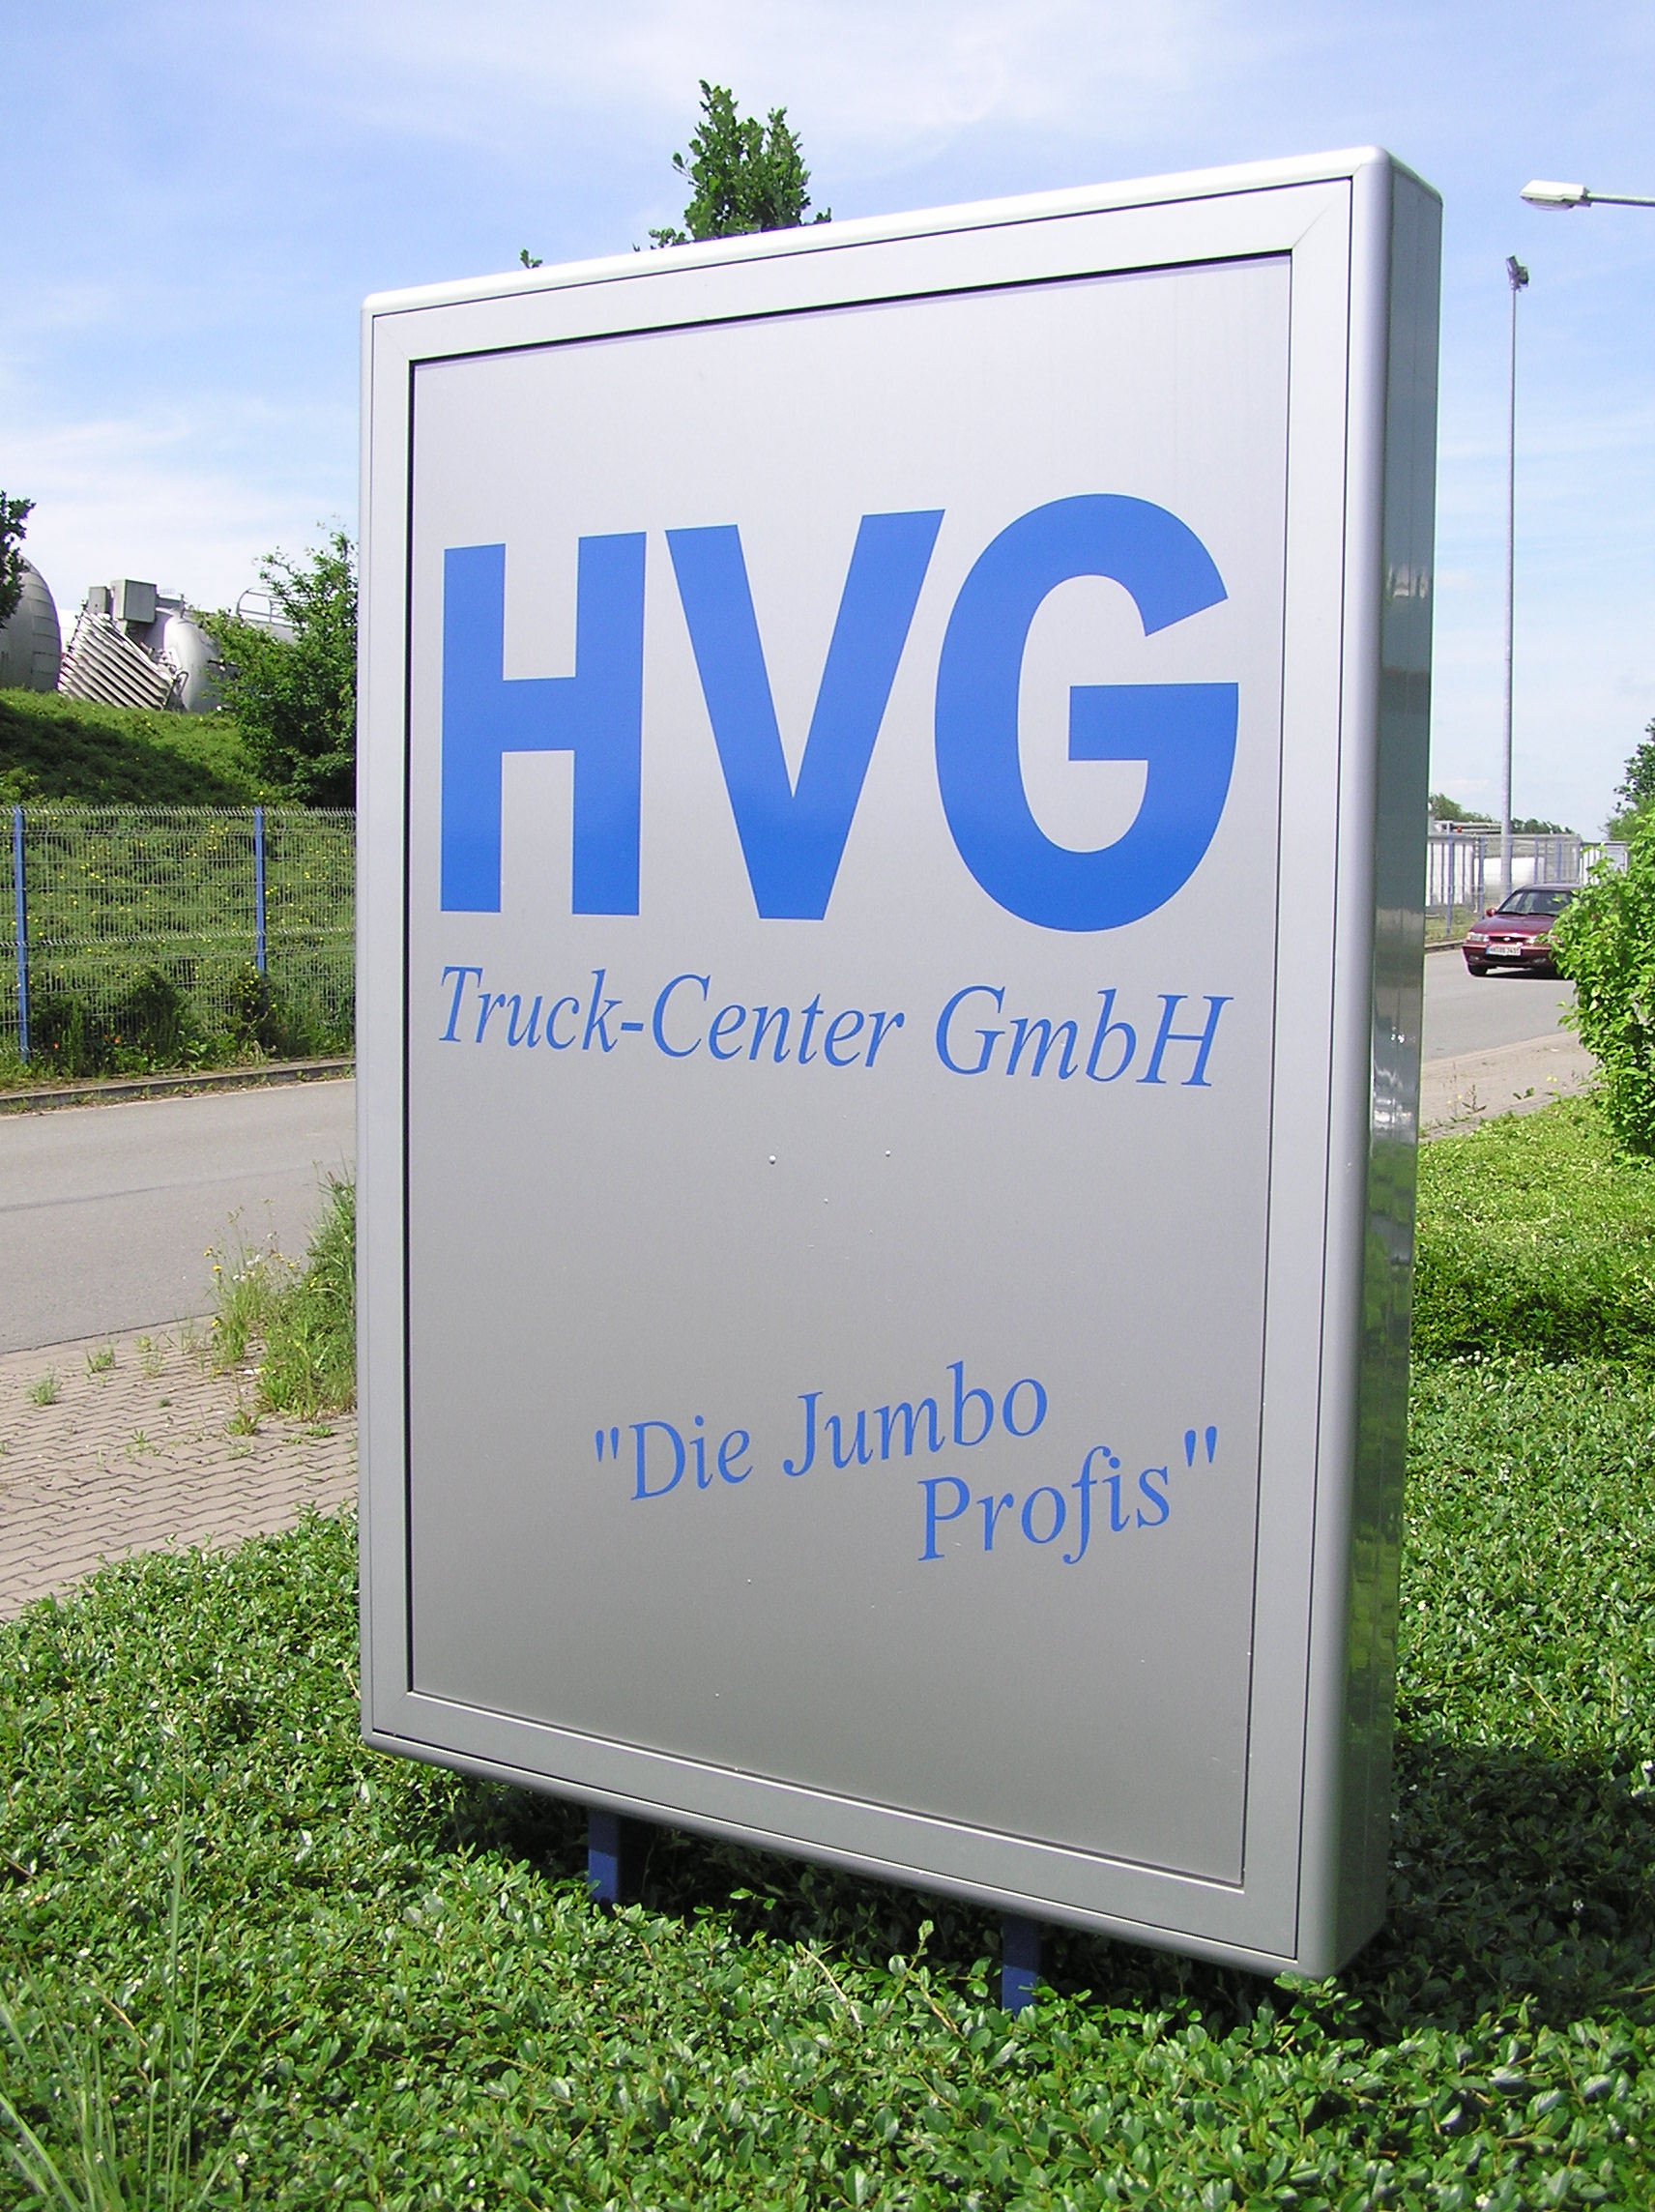 HVG Truck-Center GmbH undefined: zdjęcie 1